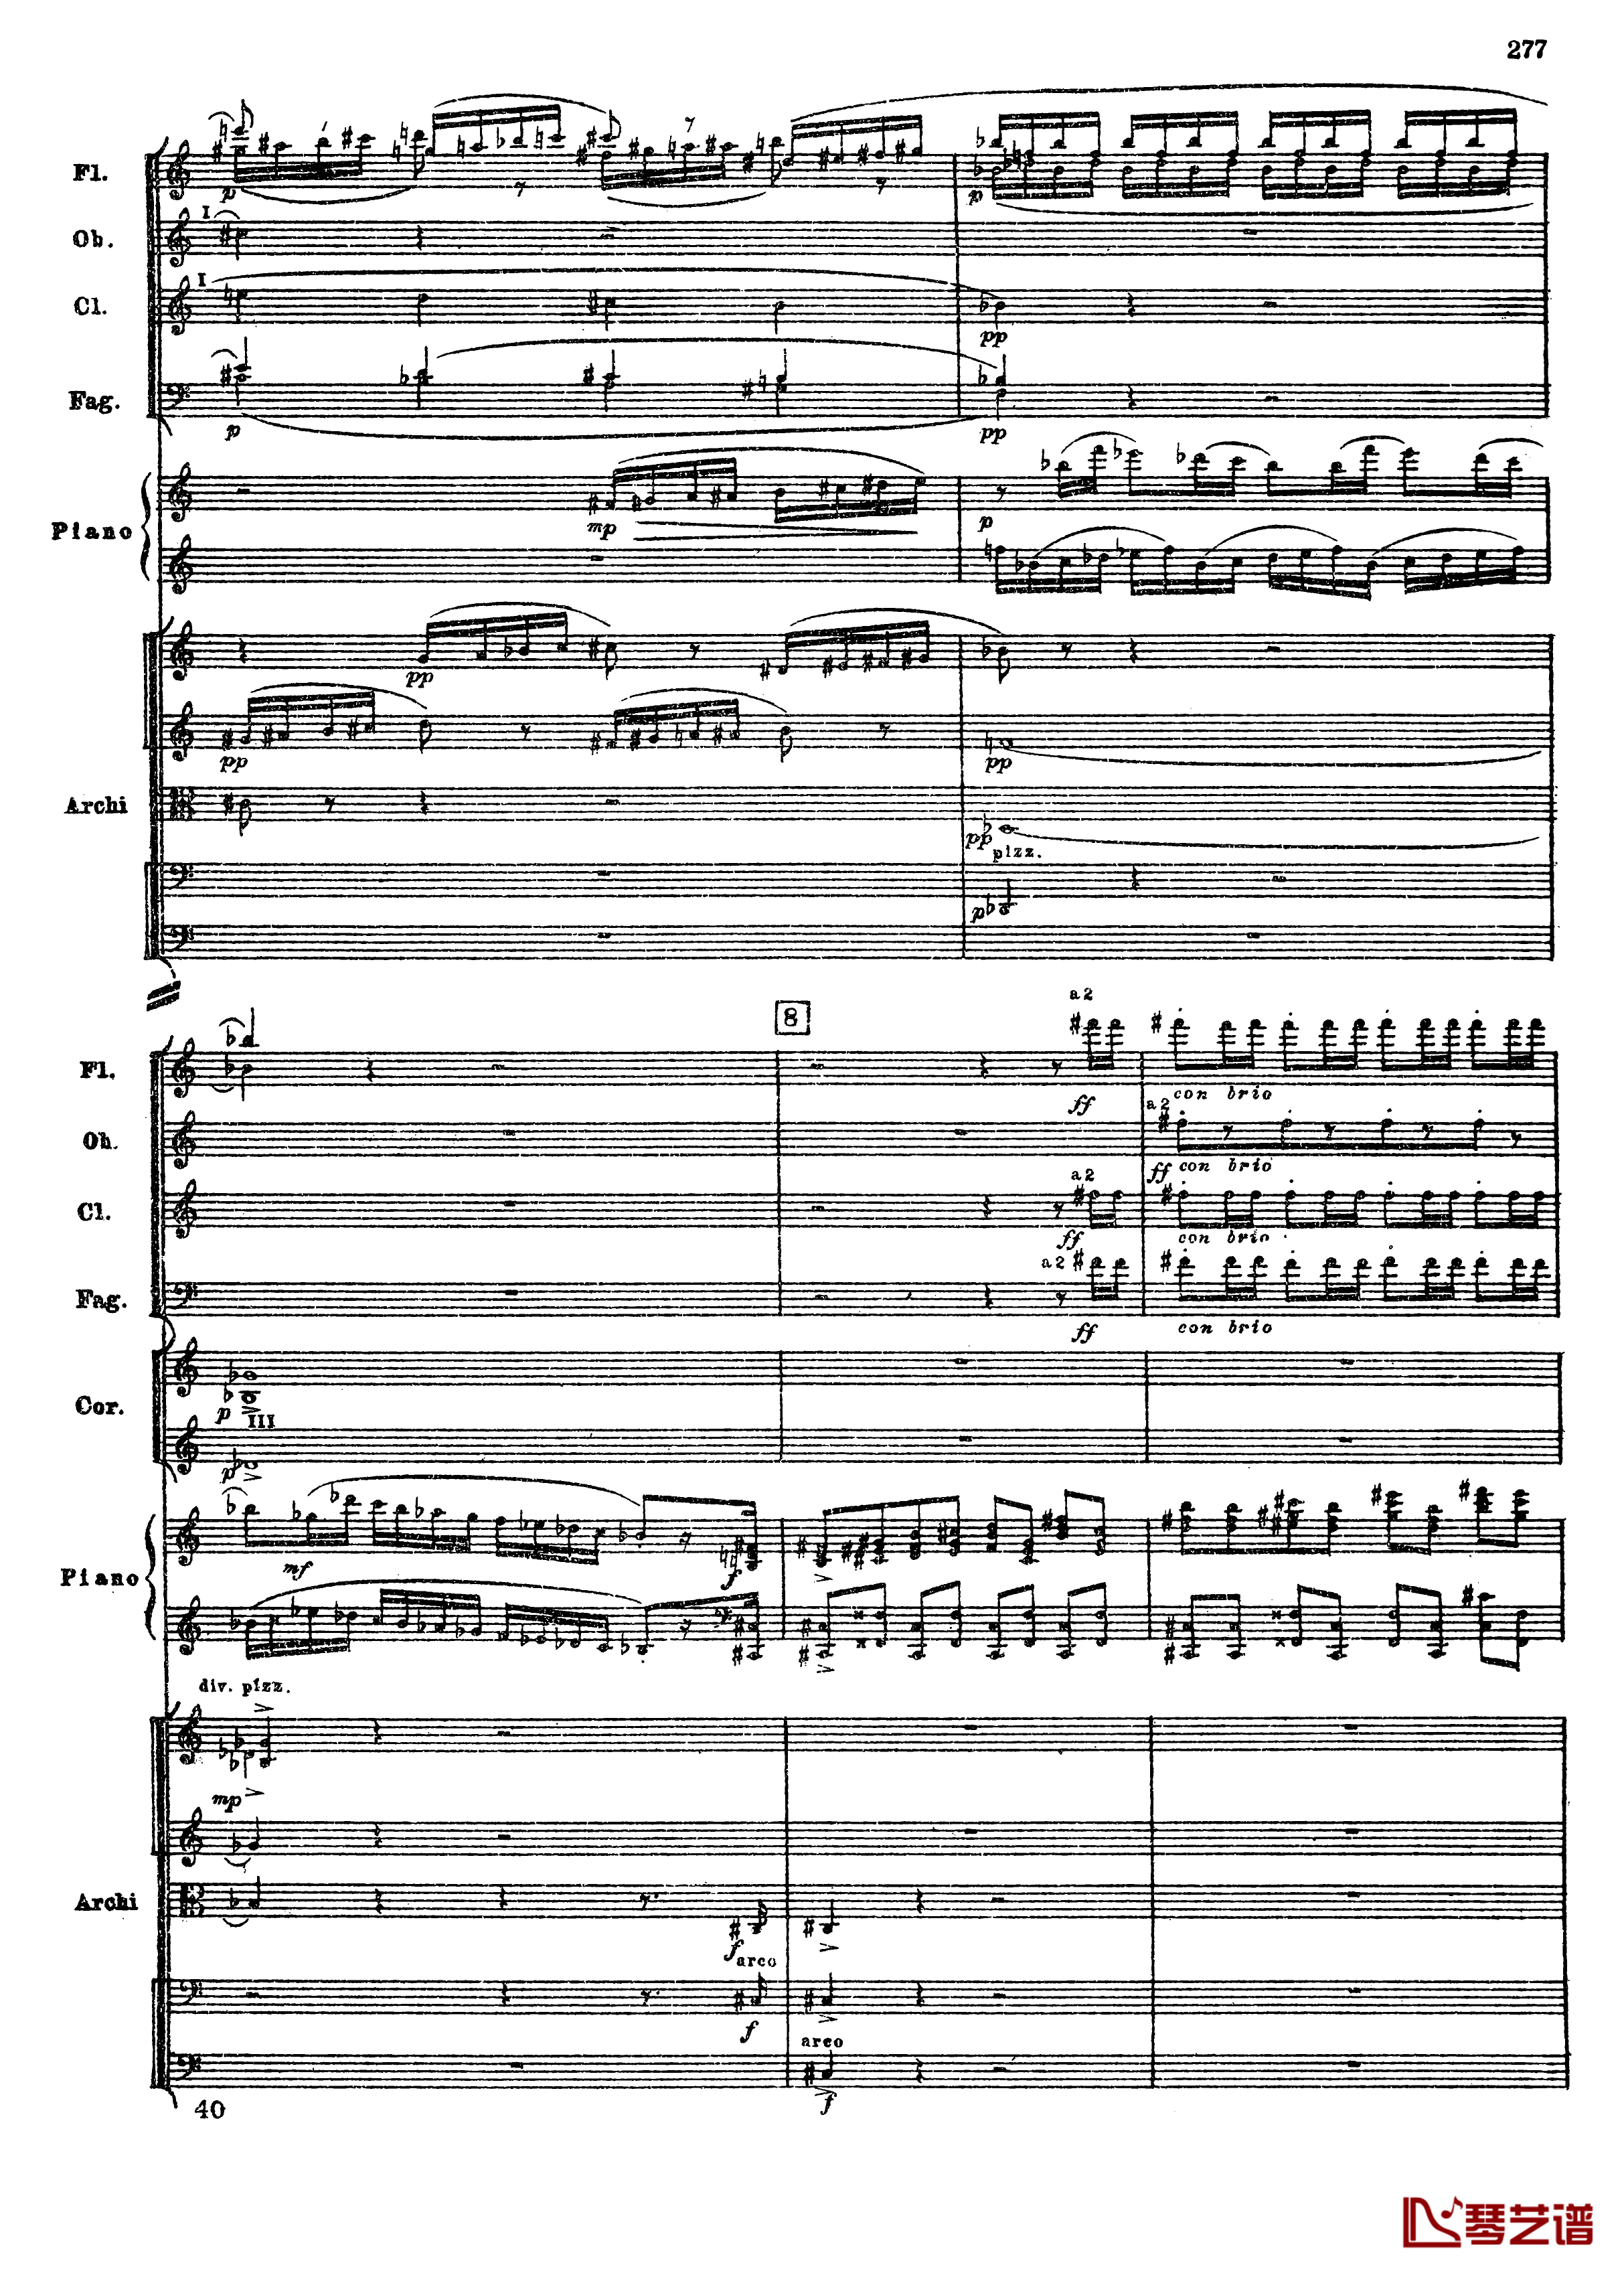 普罗科菲耶夫第三钢琴协奏曲钢琴谱-总谱-普罗科非耶夫9